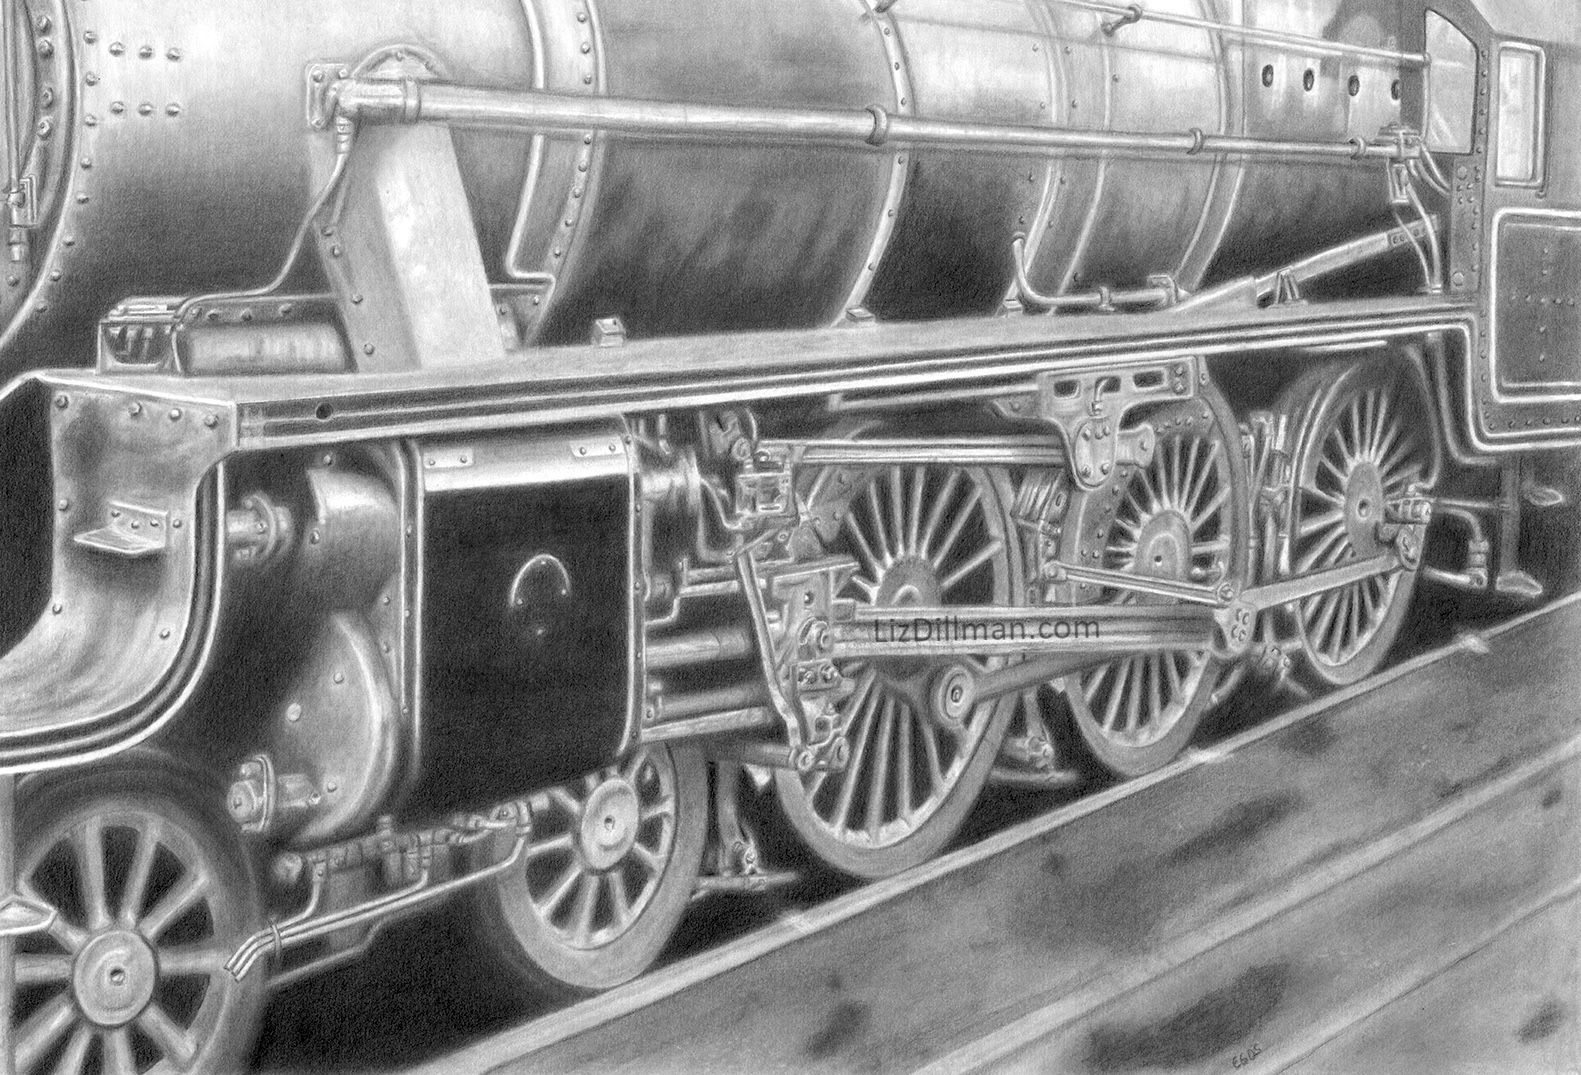 Train 
Graphite on Paper
22" x 15"